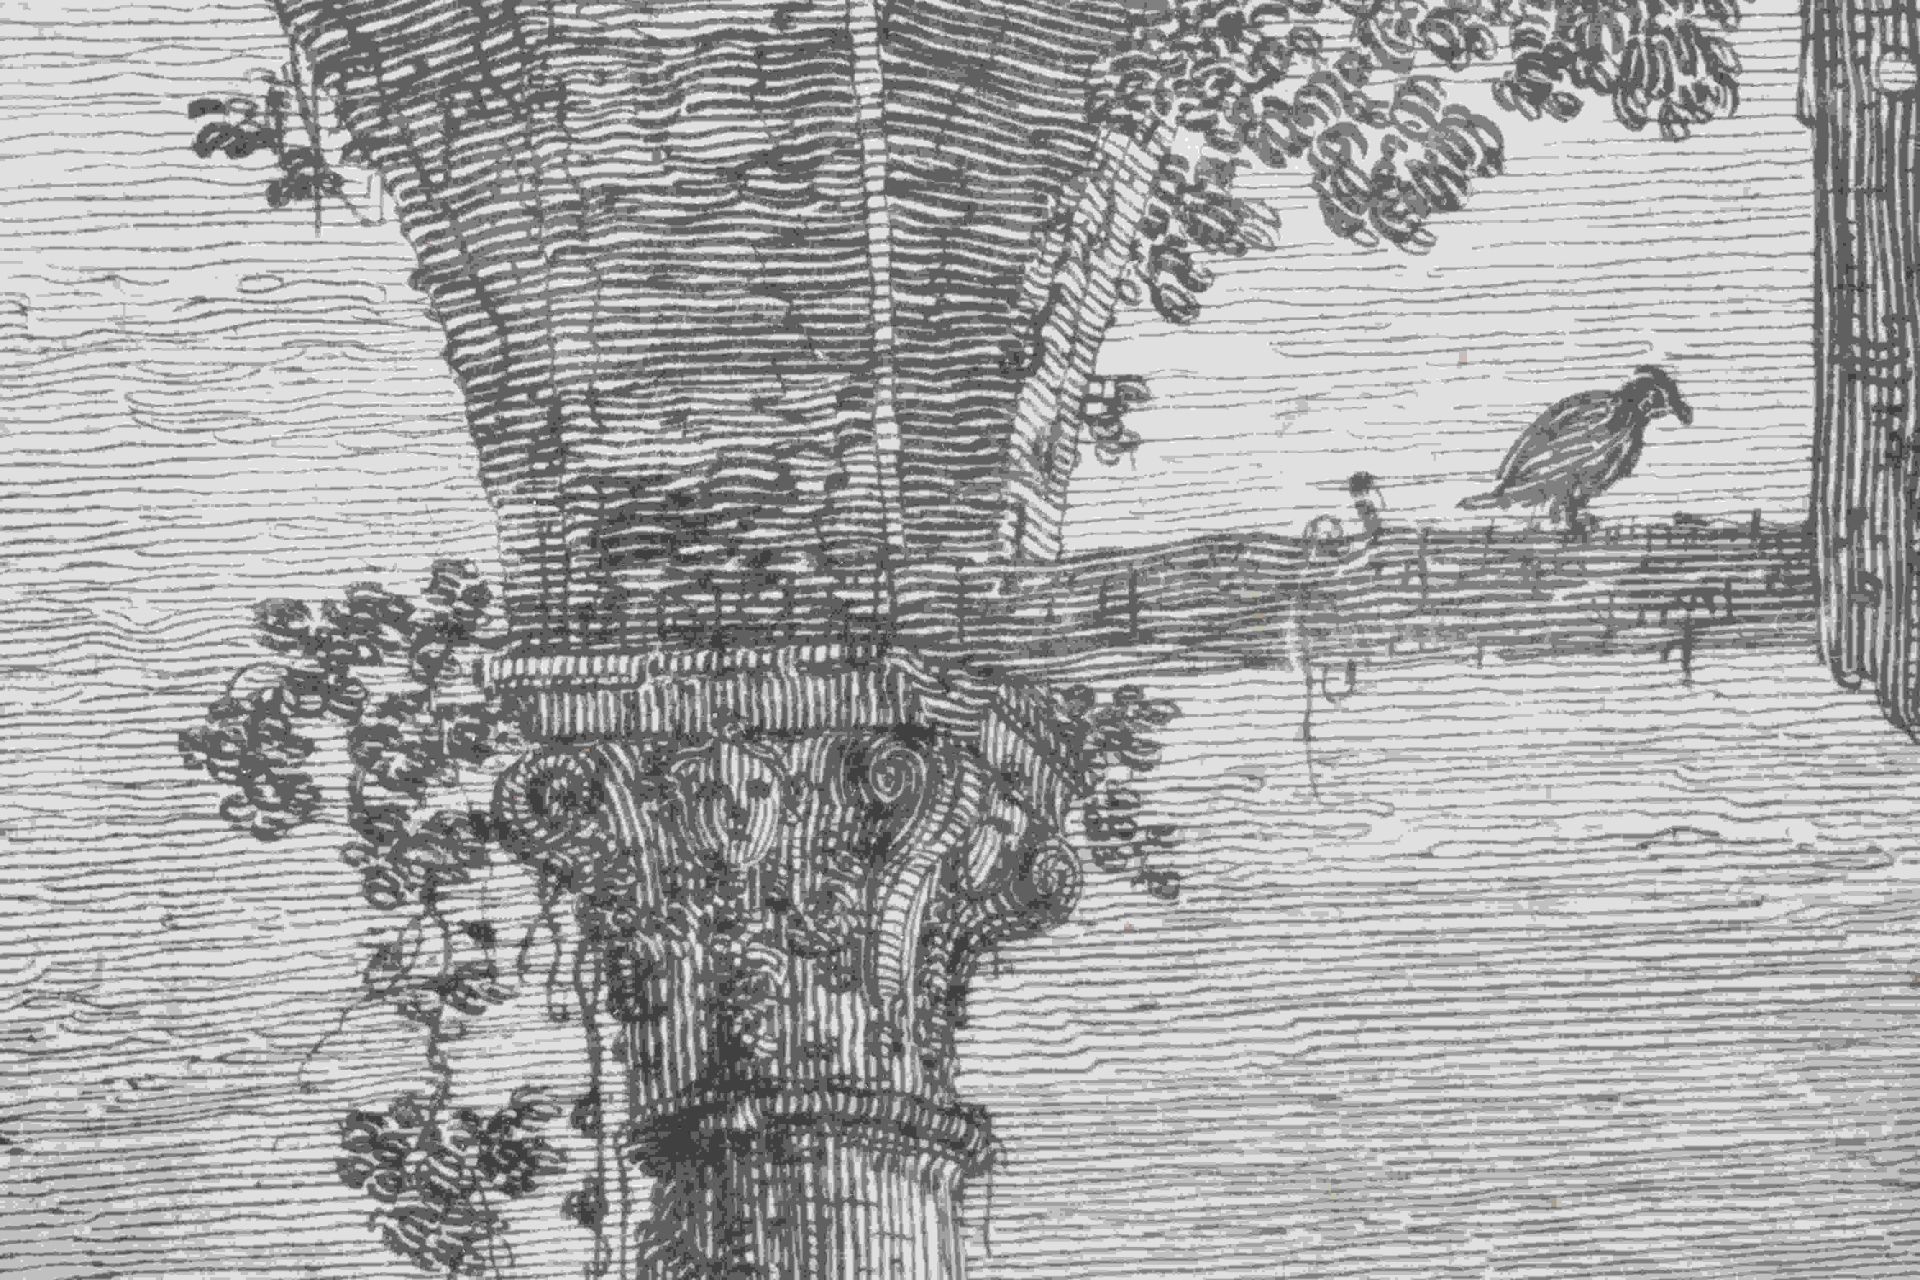 Canal, Giovanni Antonio, gen. Canaletto: Il portico con la lanterna - Bild 22 aus 24